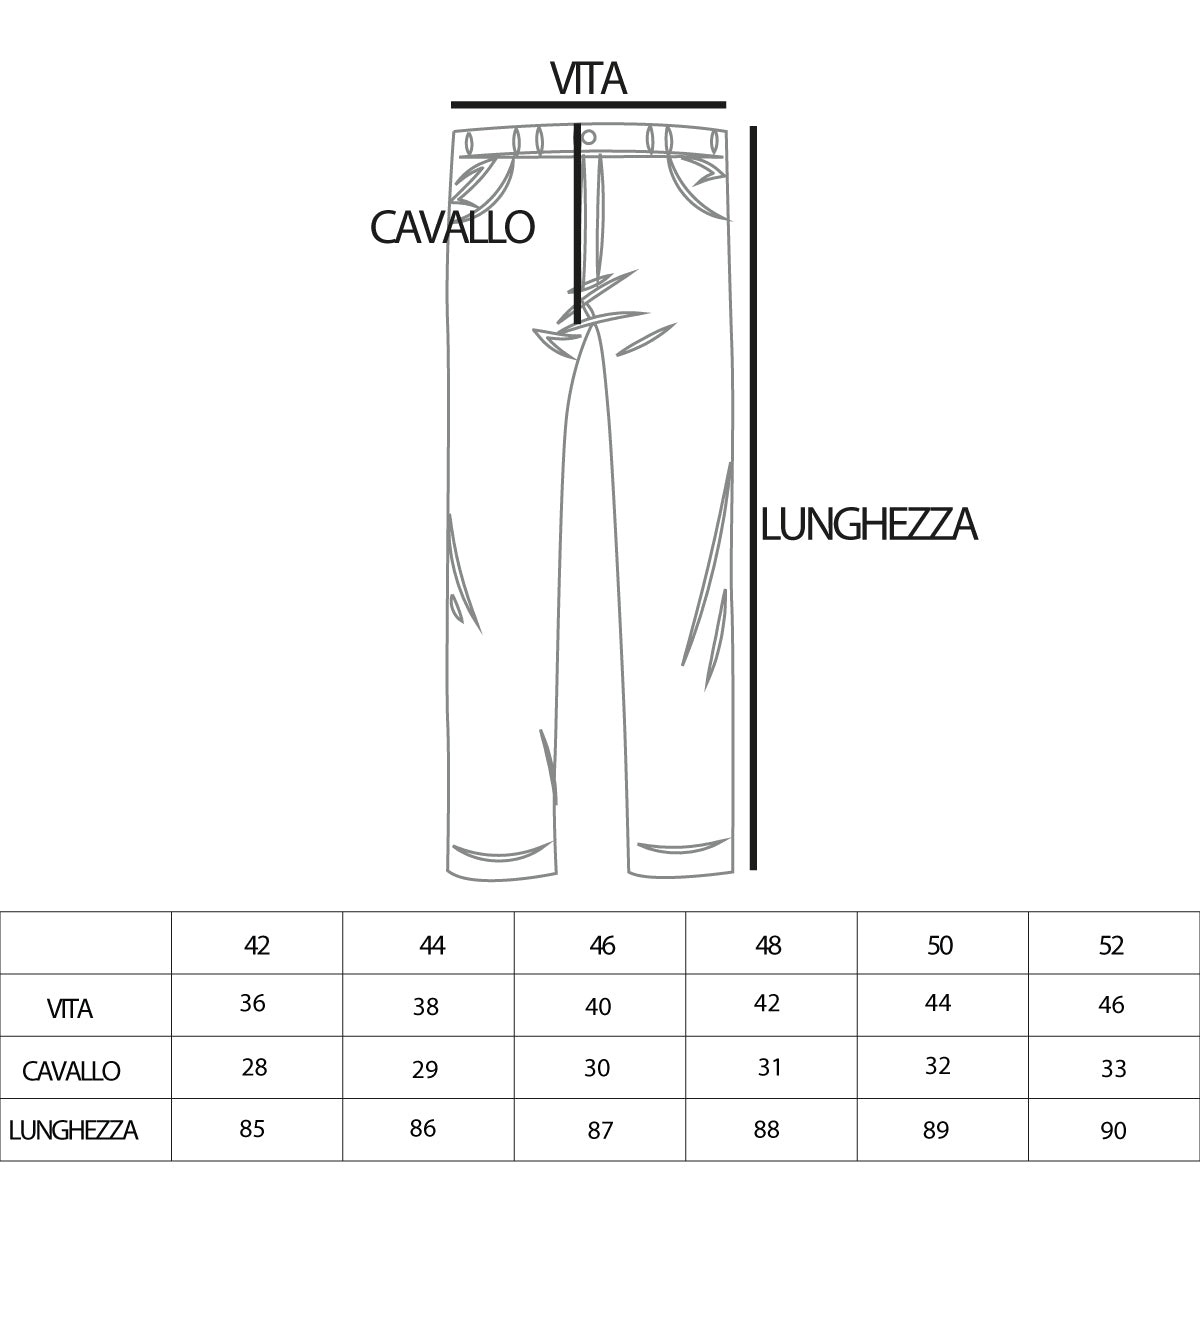 Pantaloni Jeans Uomo Loose Fit Denim Scuro Con Taglio Al Ginocchio Cinque Tasche GIOSAL-P4084A